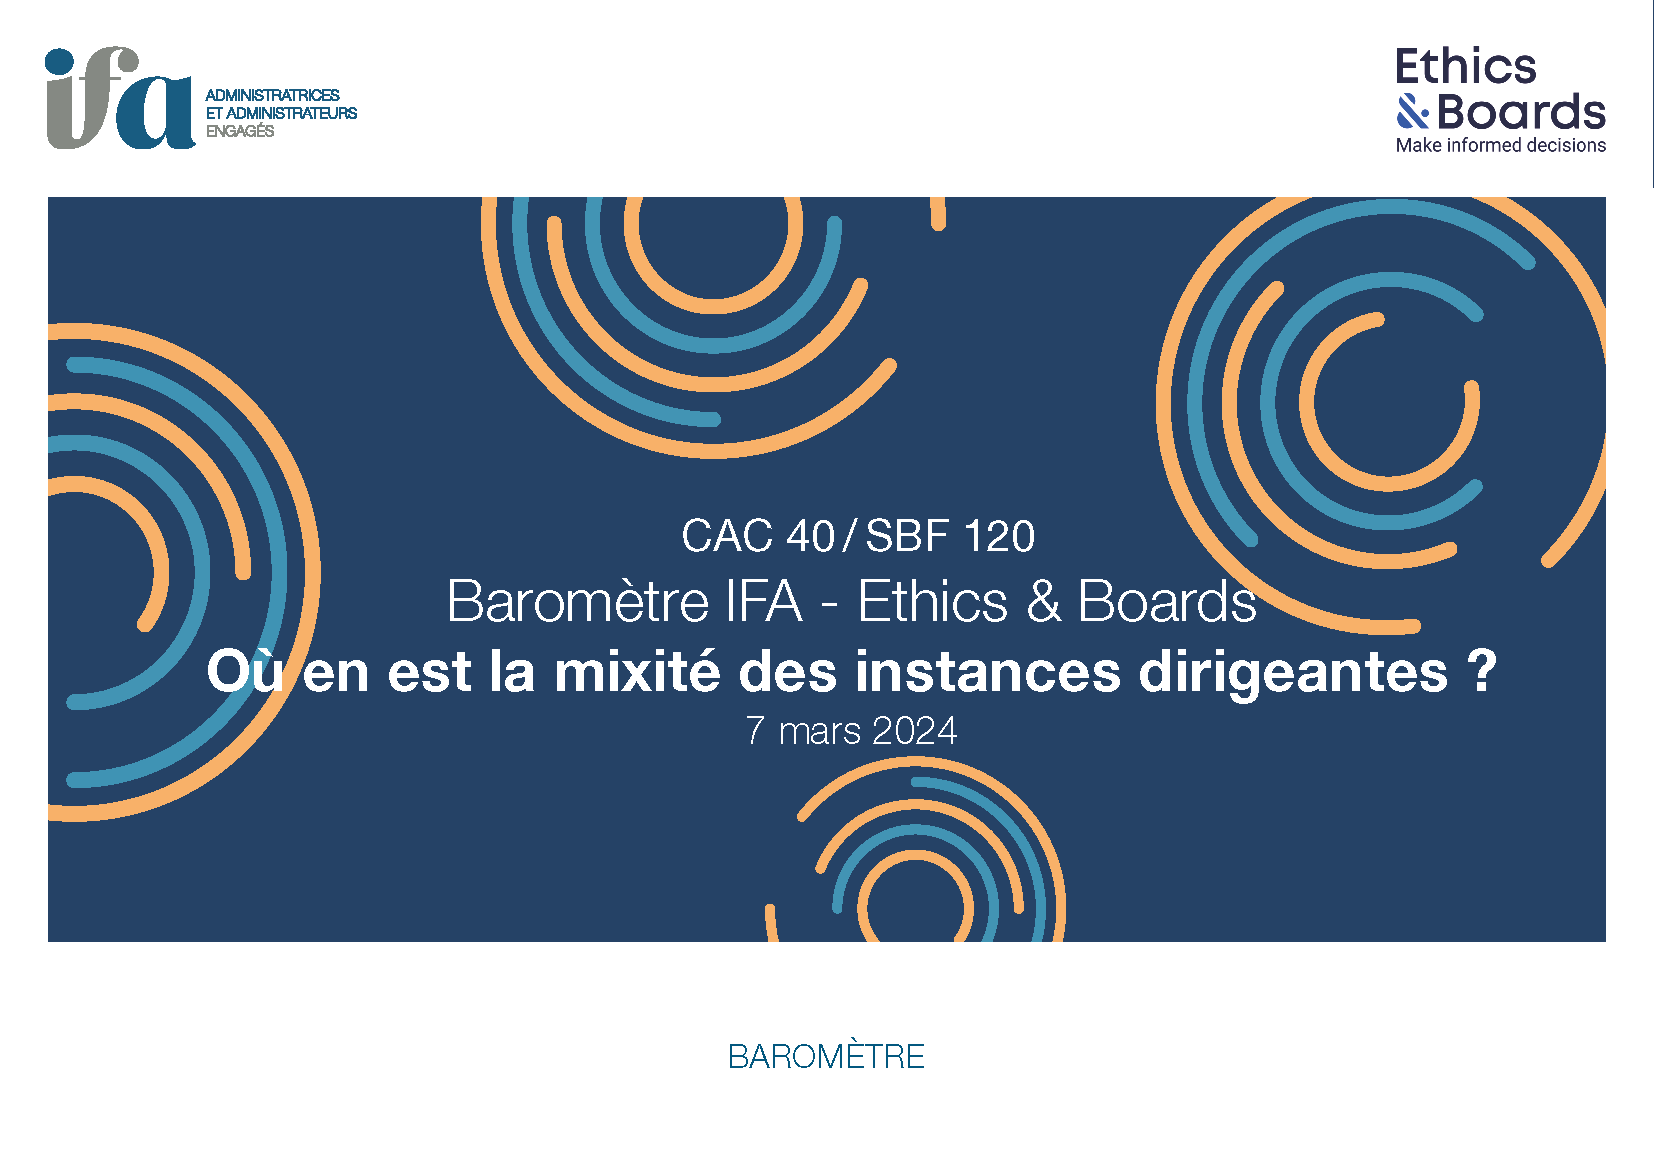 Baromètre IFA - Ethics & Boards de la mixité des instances dirigeantes 2024